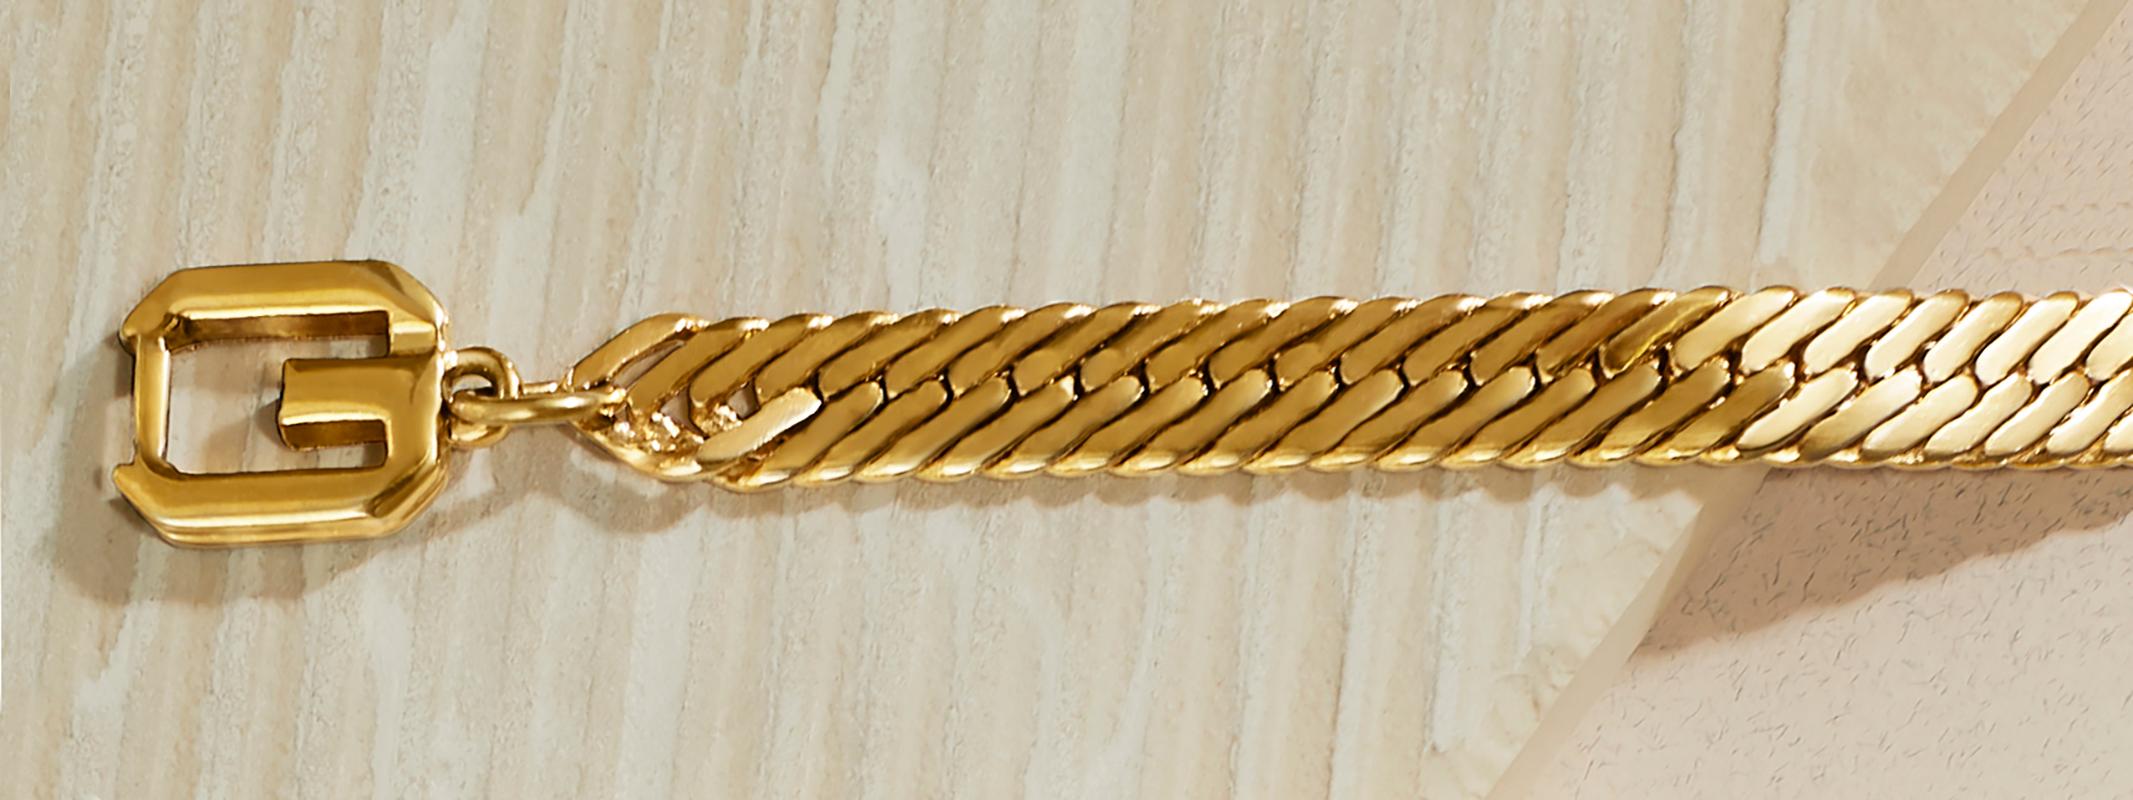 1980 Vintage Givenchy bracelet chaîne à chevrons en plaqué or.  Ce bracelet vintage présente une chaîne plate et large à chevrons avec un fermoir à logo double G.   Le bracelet mesure 7 1/4 pouces de long, un peu plus de 1/4 pouce de large et se